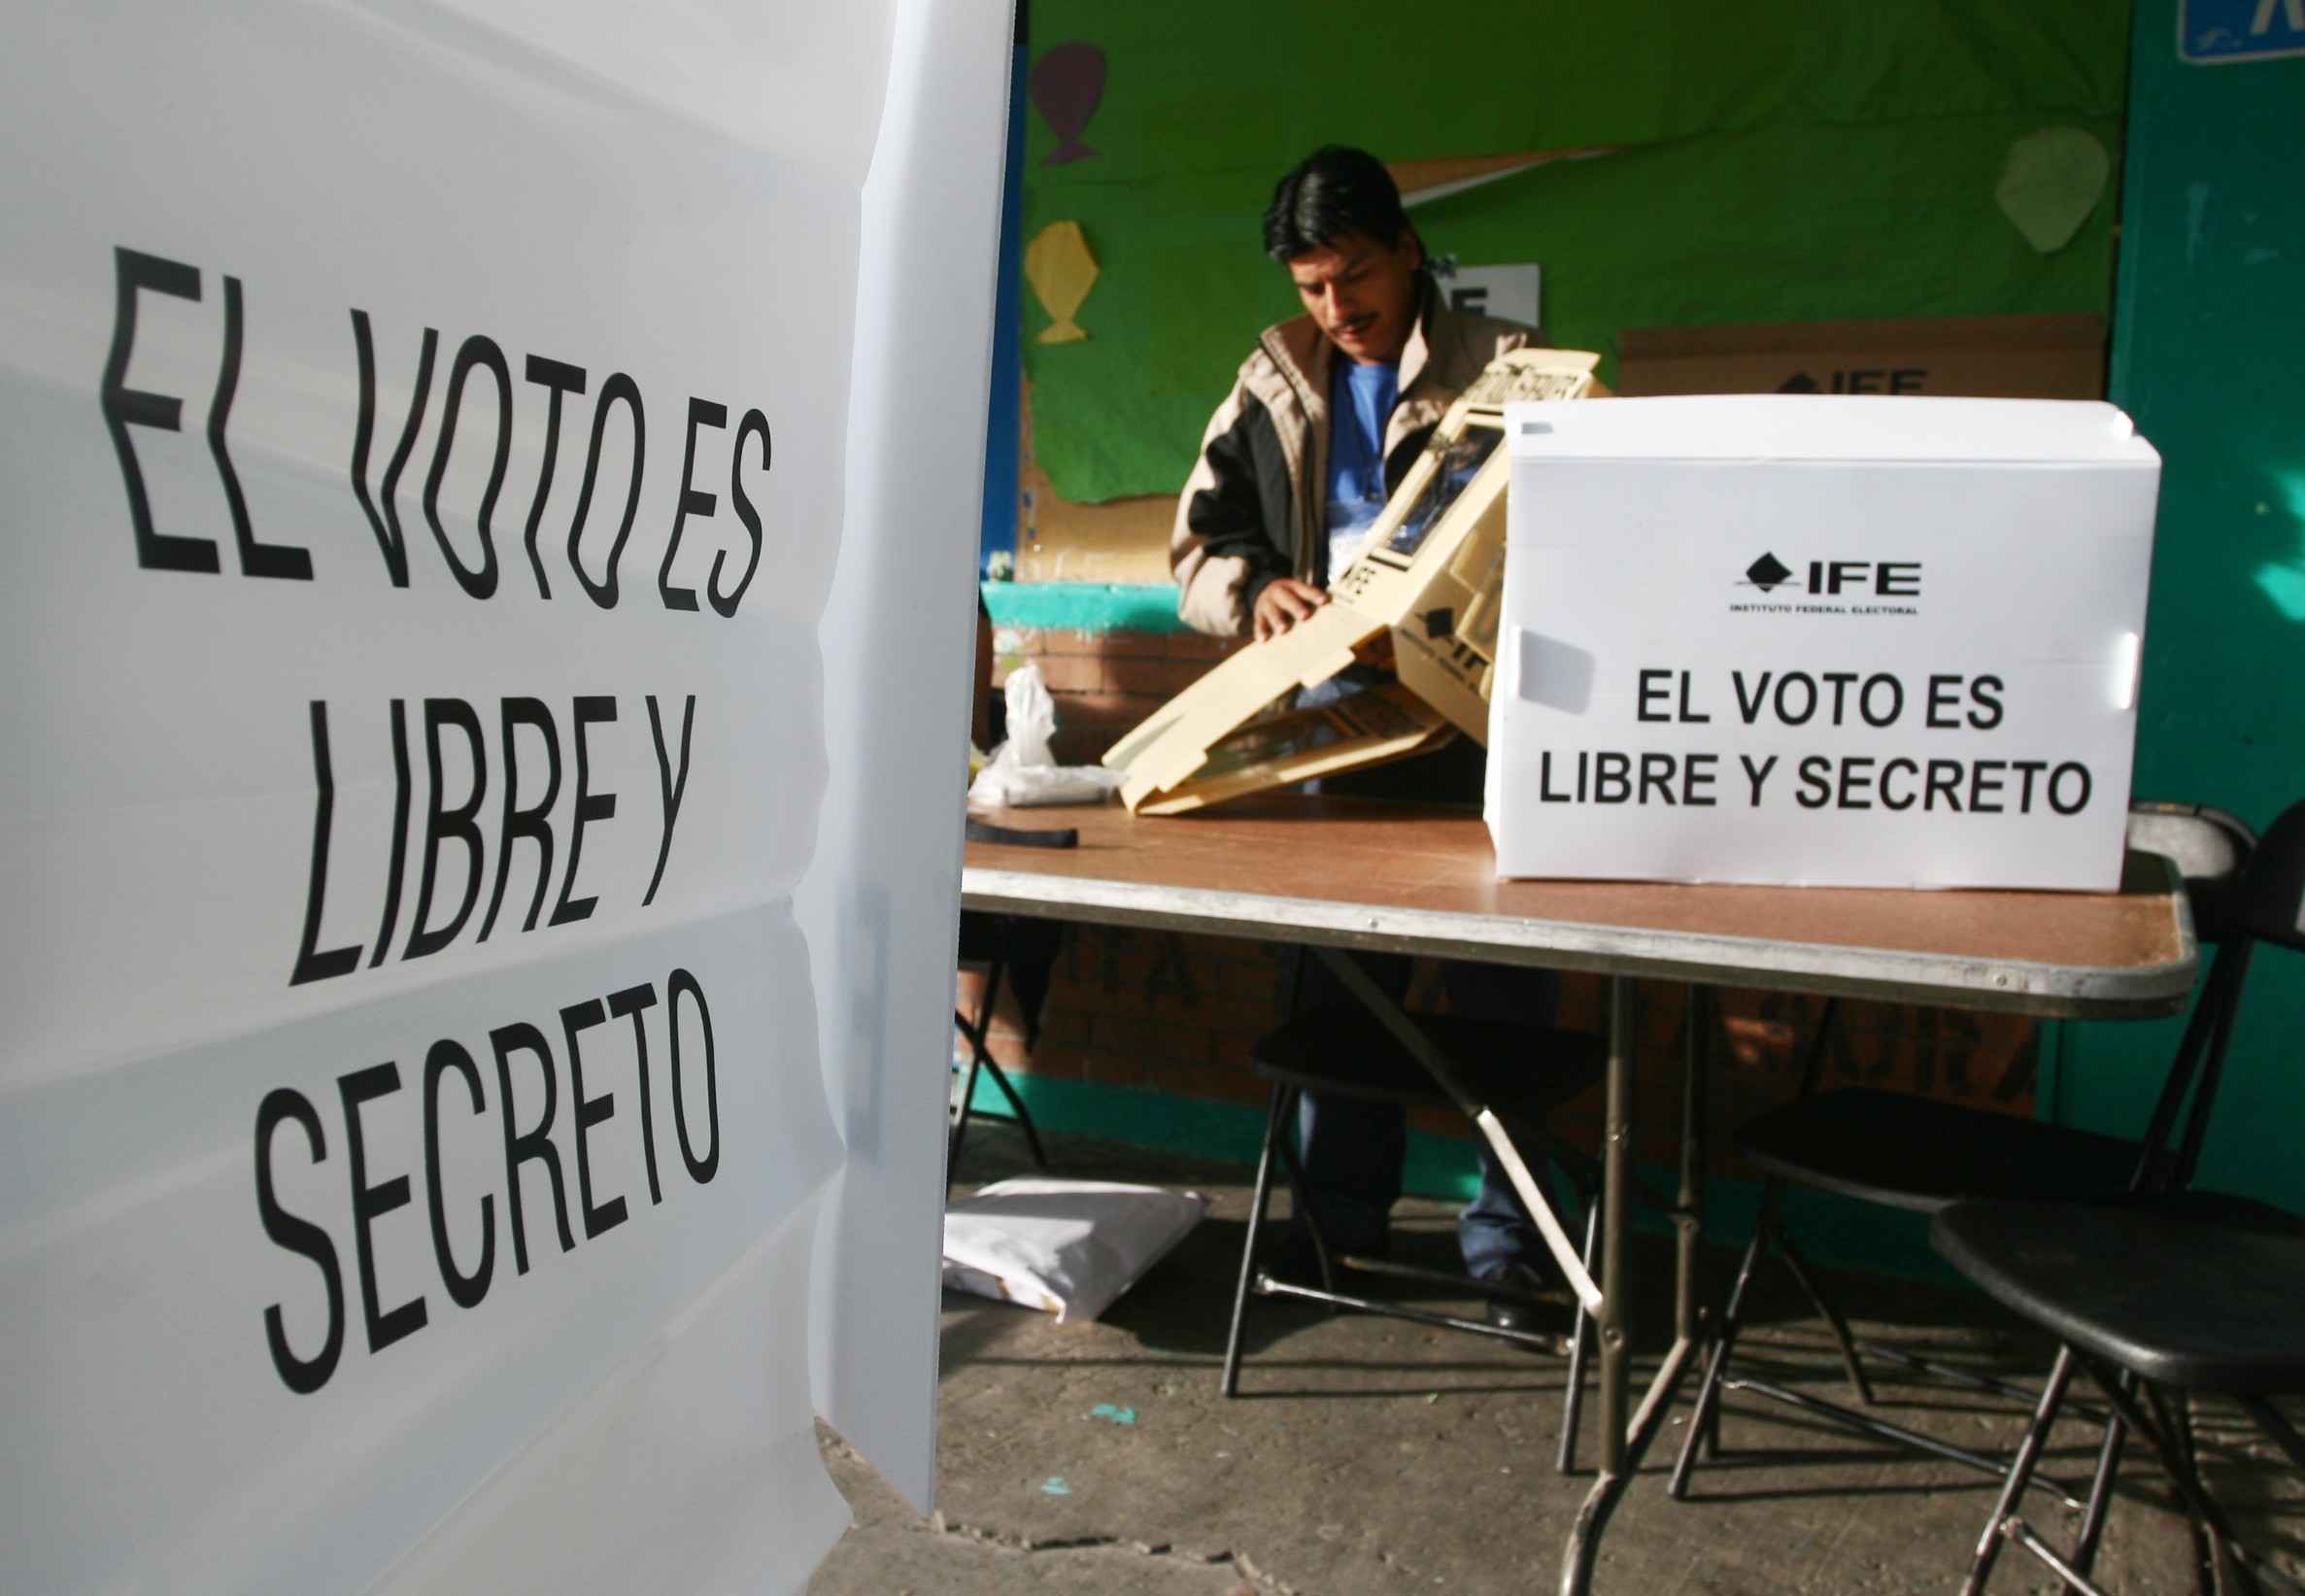 Ofrecen servicio para ubicar casillas electorales - Elecciones Casillas3